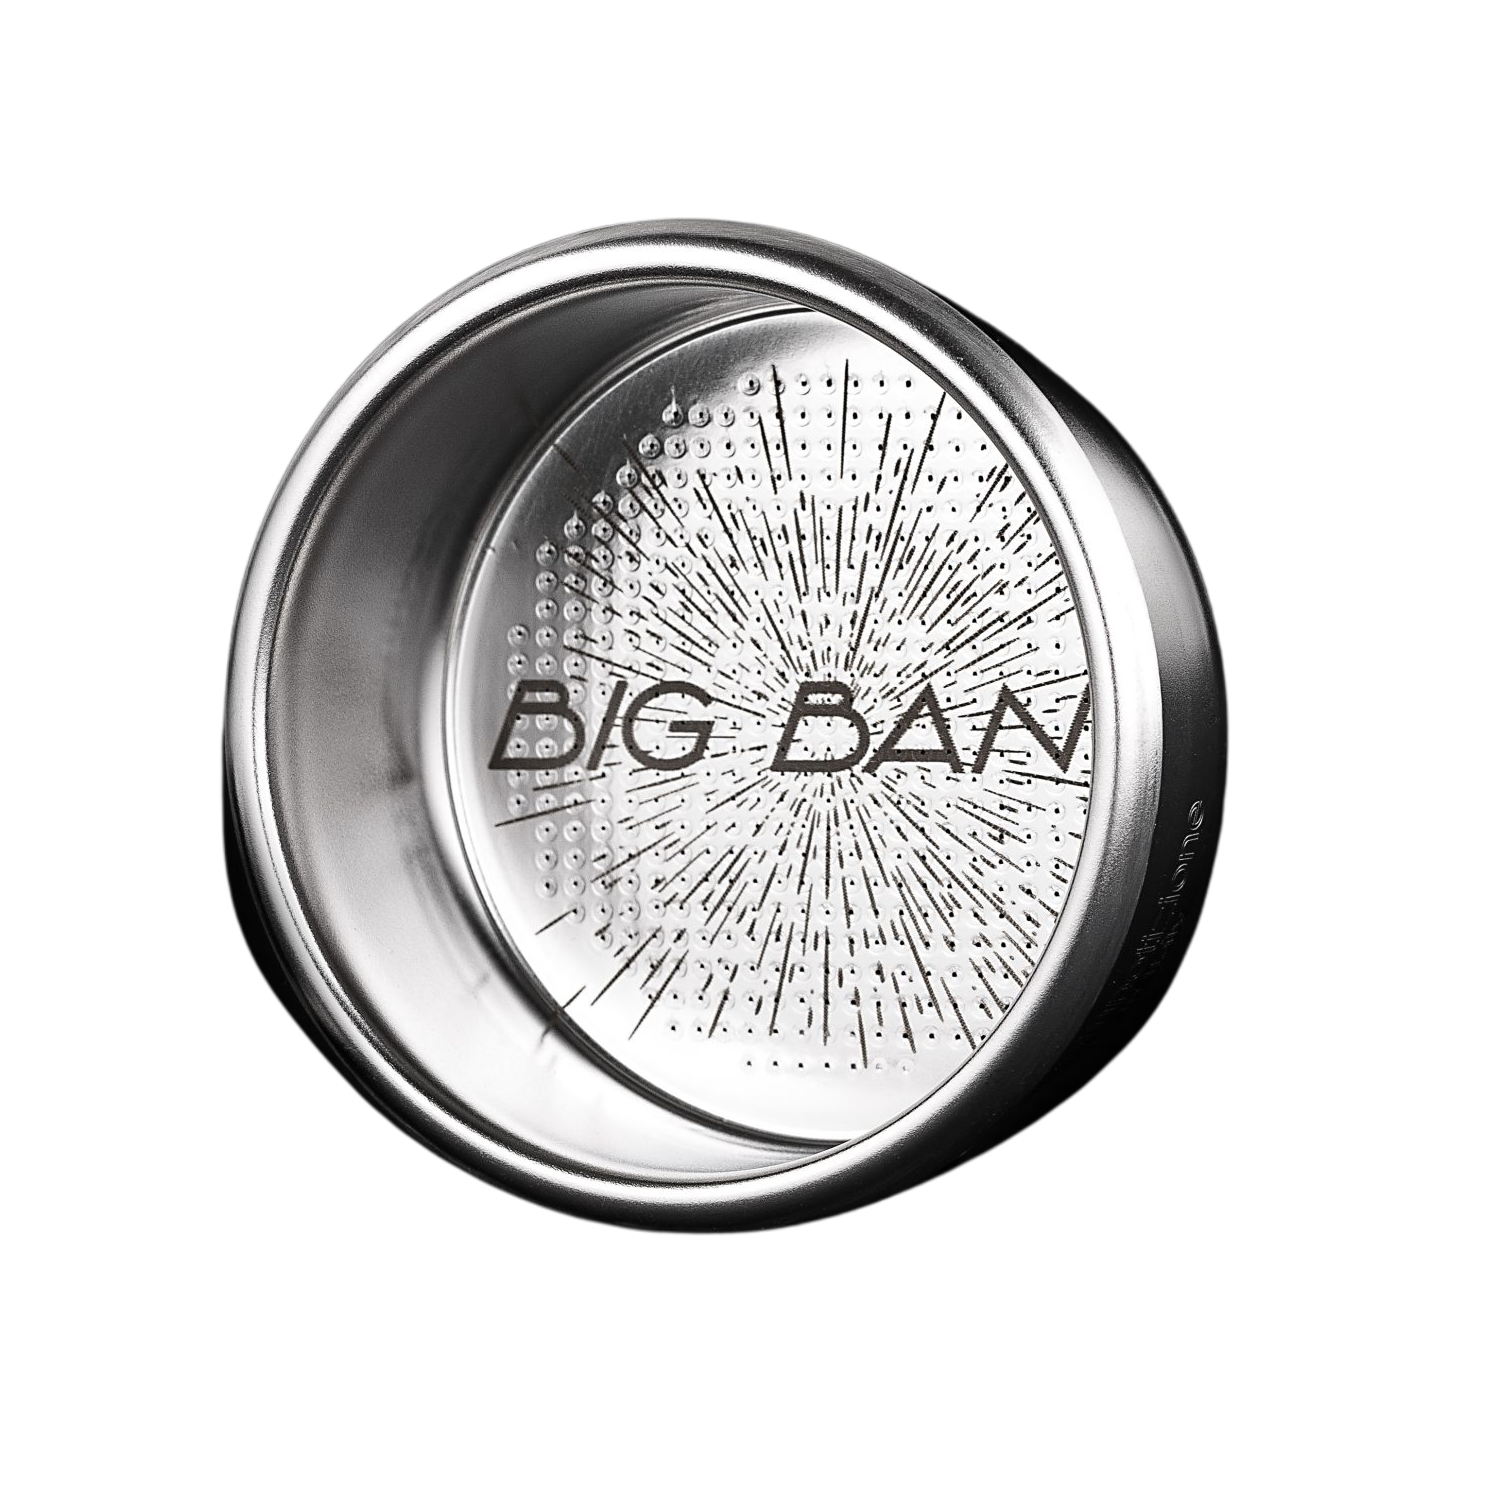 IMS Competition Big Bang Basket For Breville 54mm Group - 20/22gr